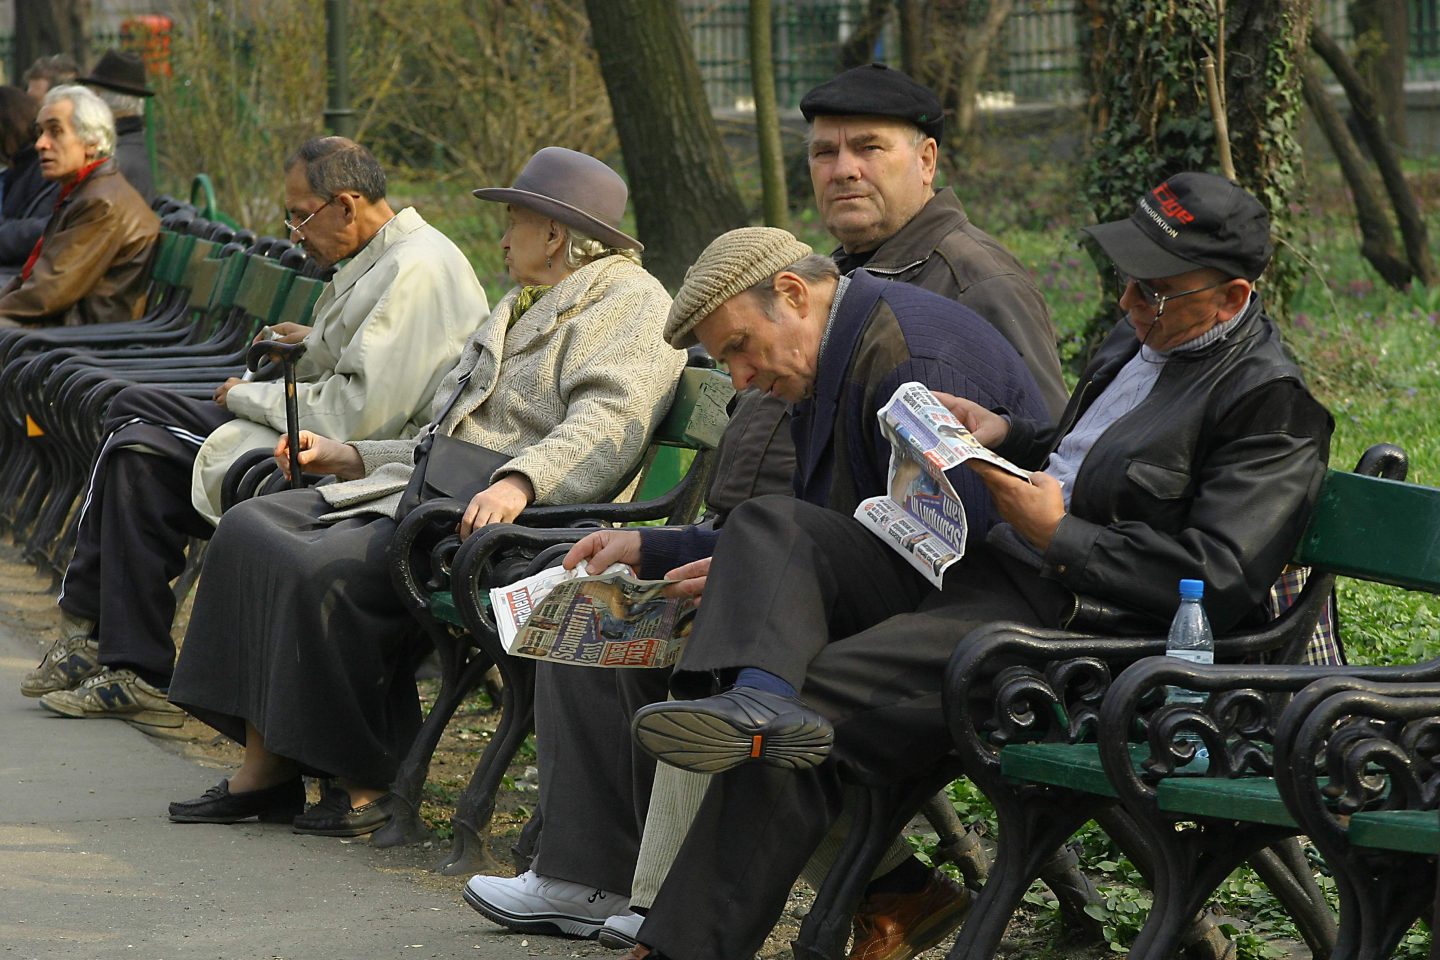 Majorări substanţiale de pensii pentru cei care își ridică pensia din România